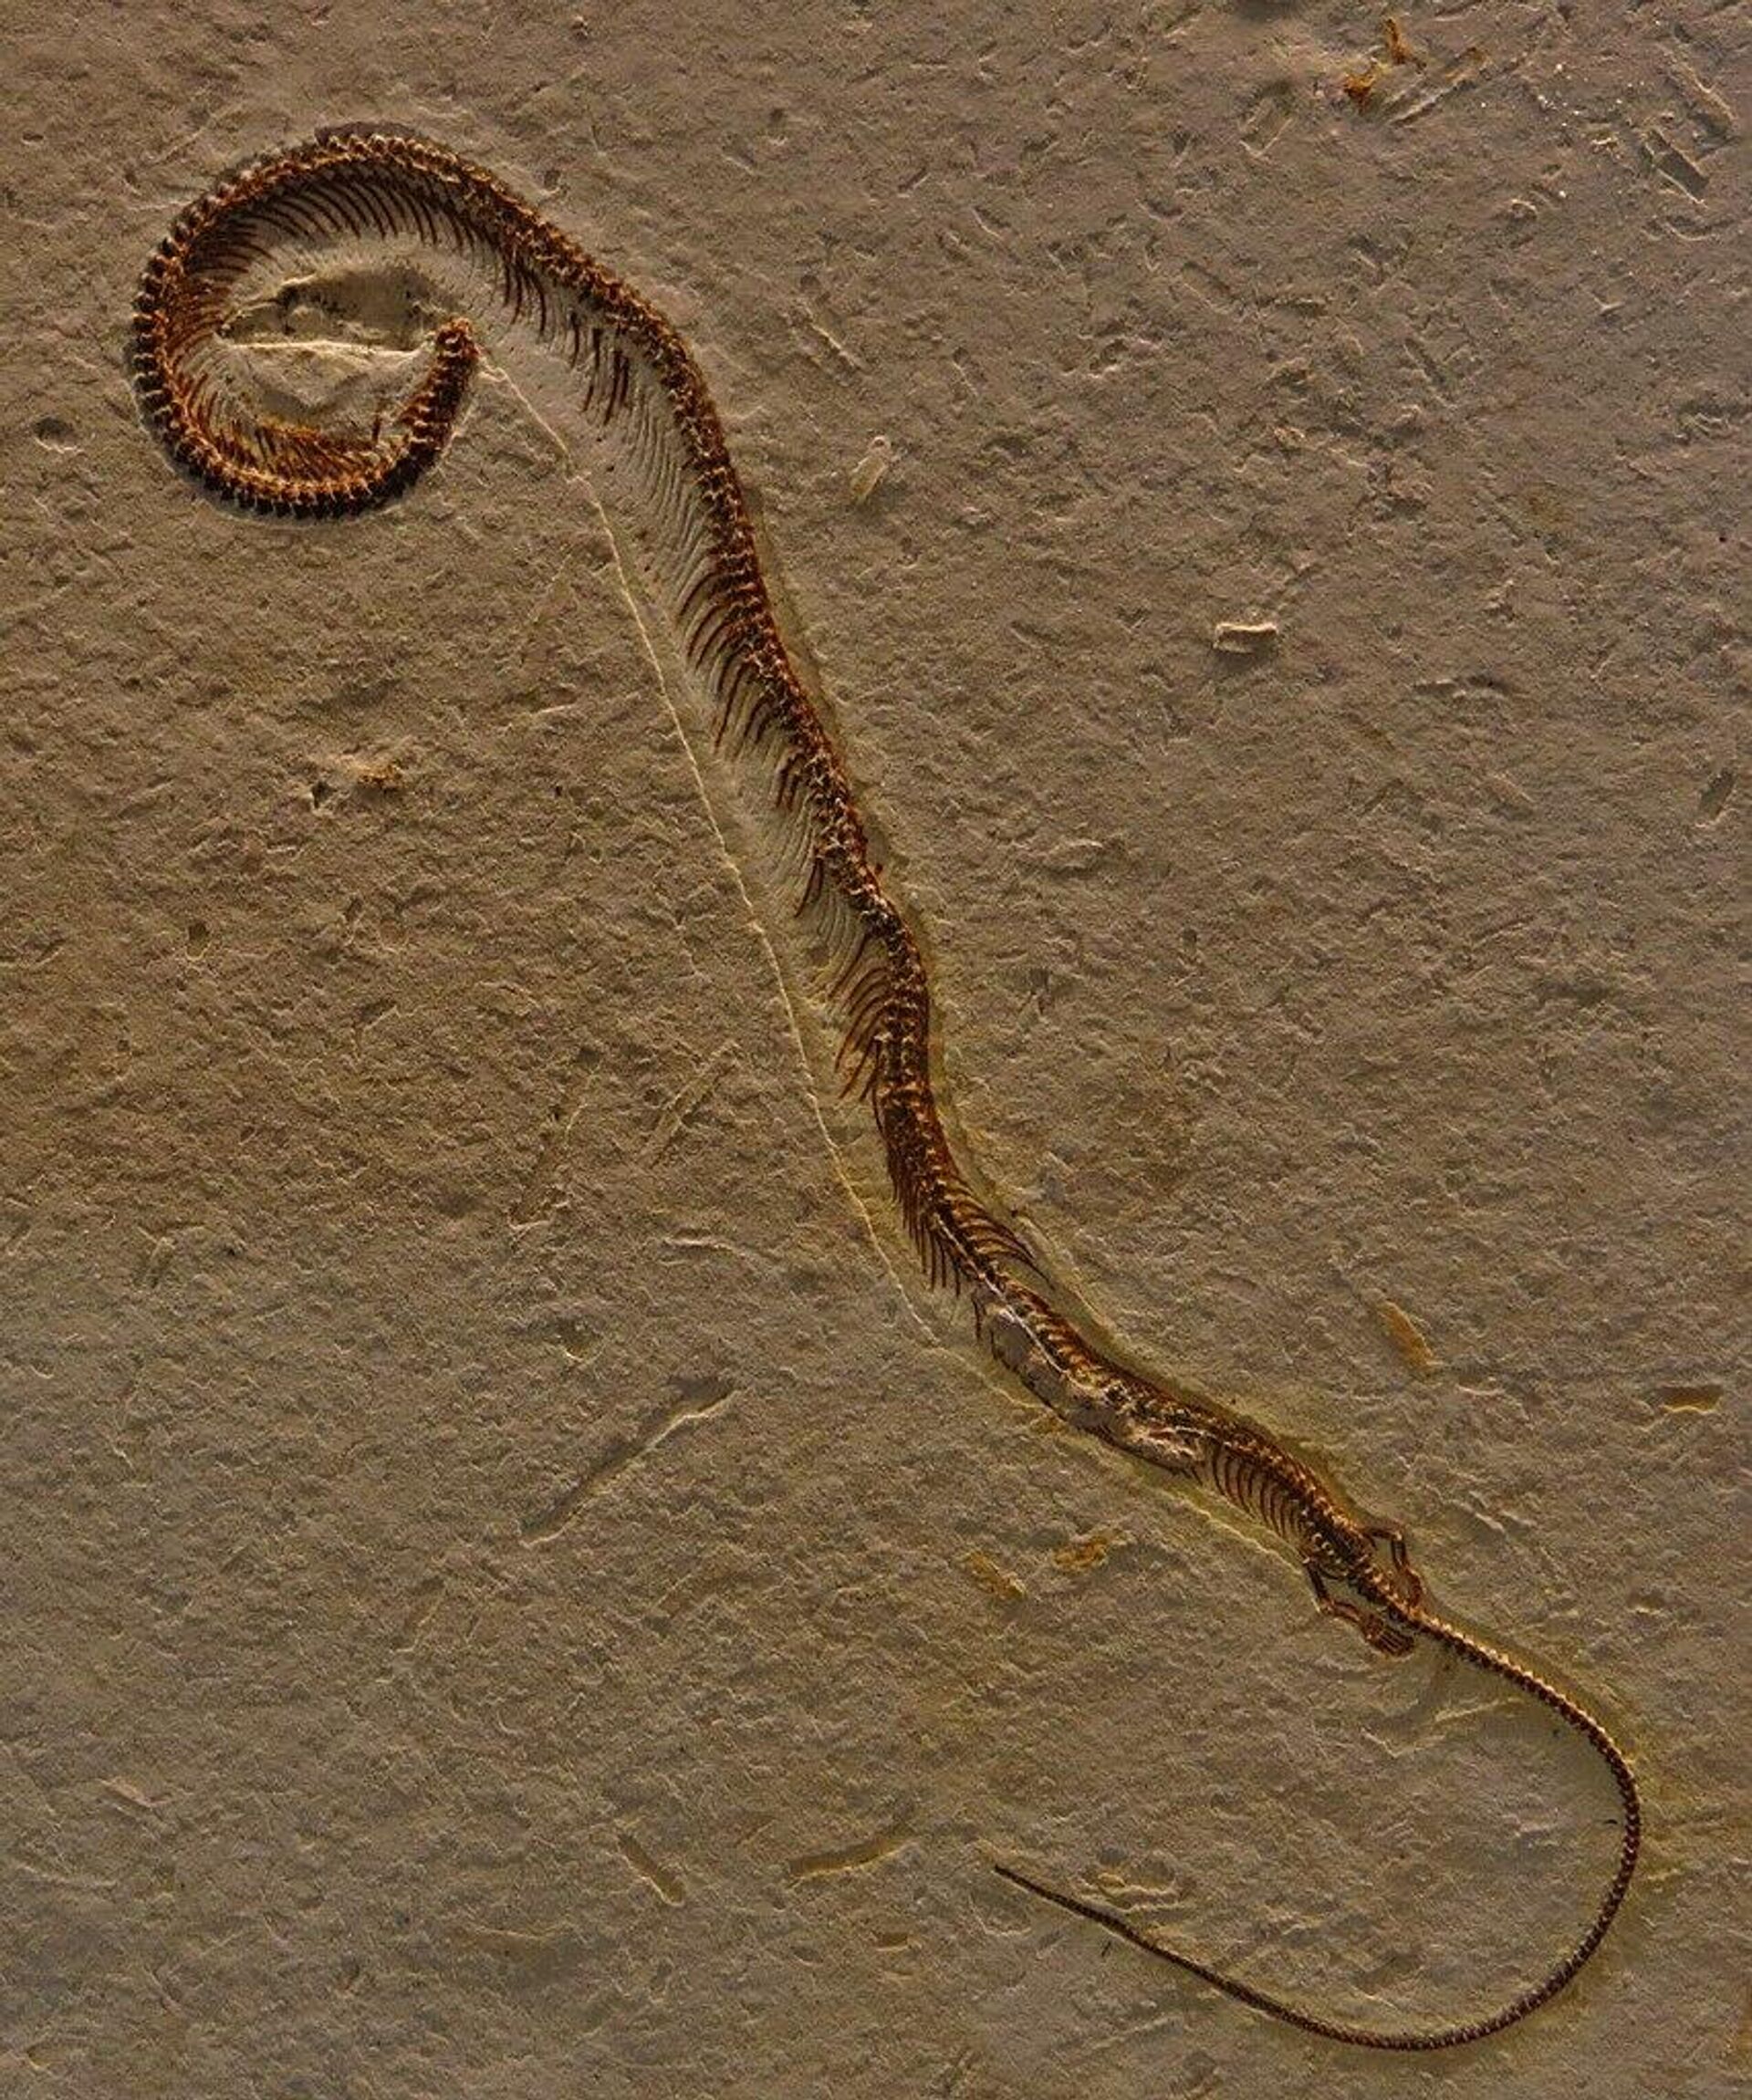 Fosil praistorijske zmije sa četiri noge - Sputnik Srbija, 1920, 29.11.2021